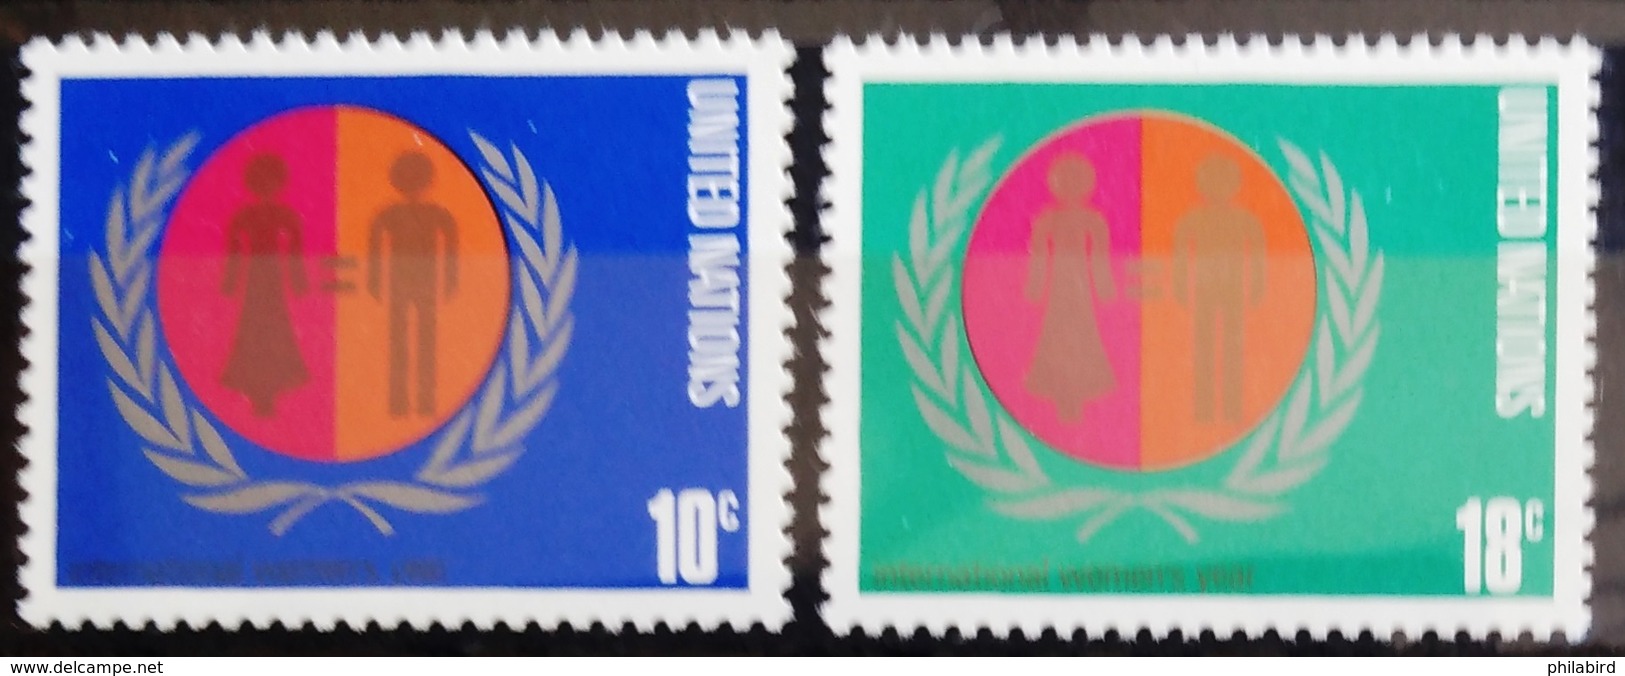 NATIONS-UNIS  NEW YORK                   N° 251/252                     NEUF** - Unused Stamps